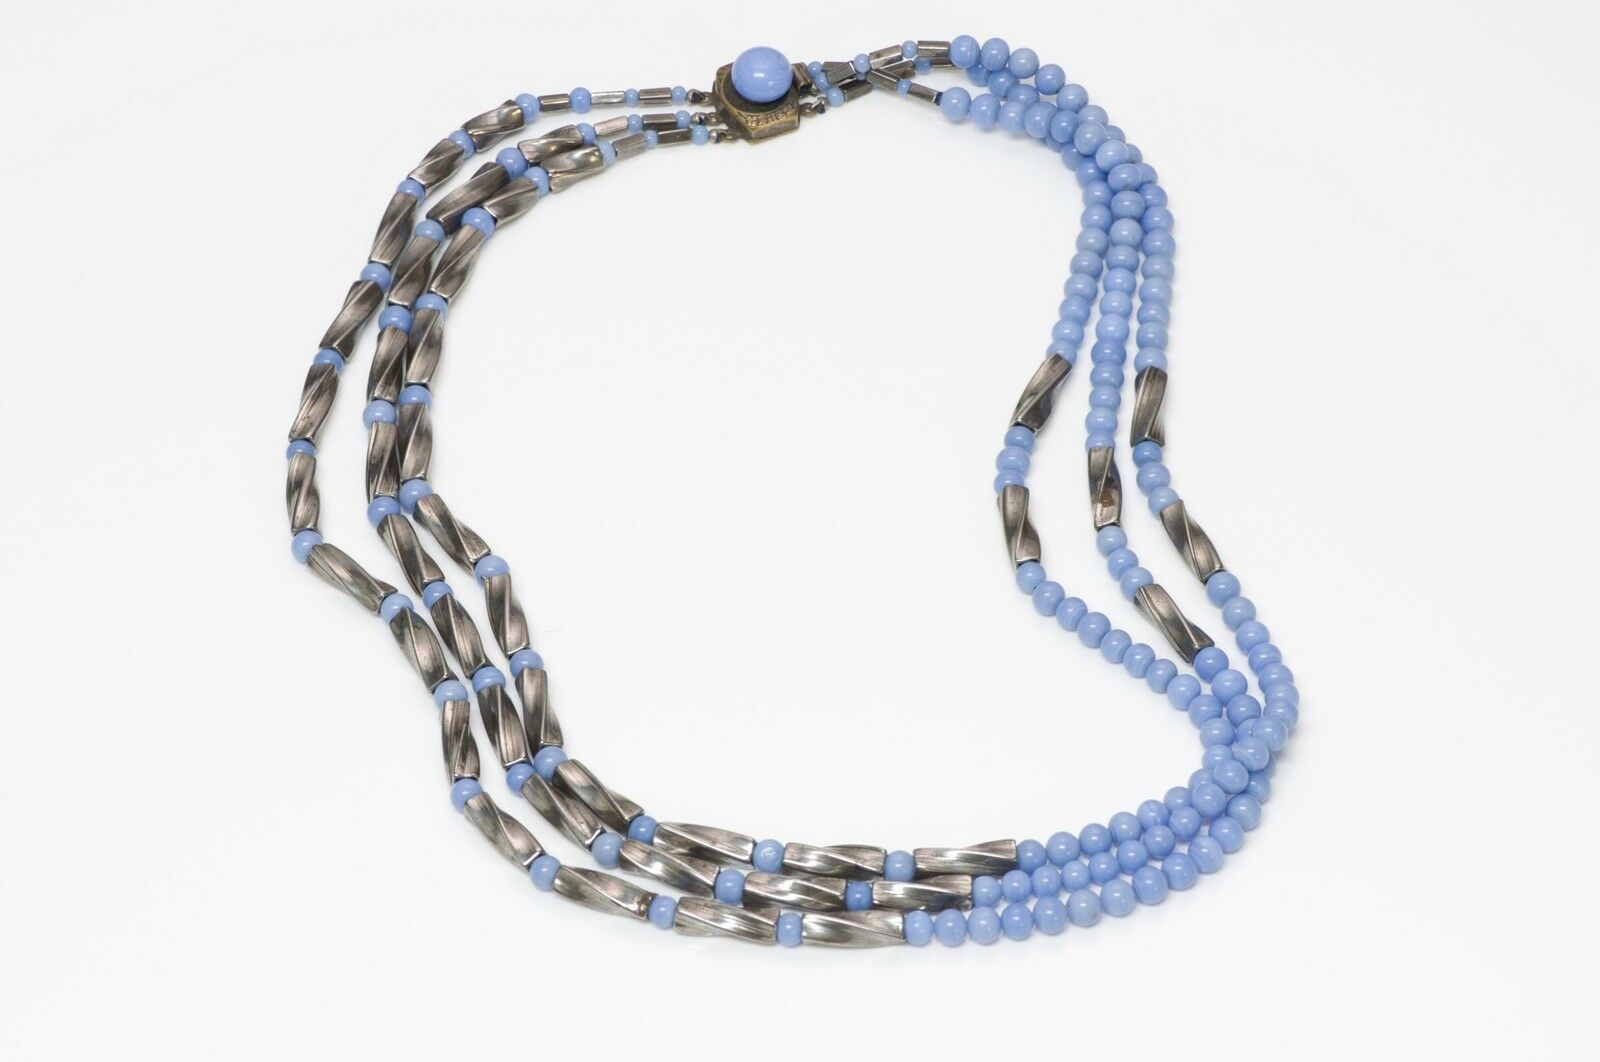 Vintage 1950's Louis Rousselet Blue Glass Beads Necklace